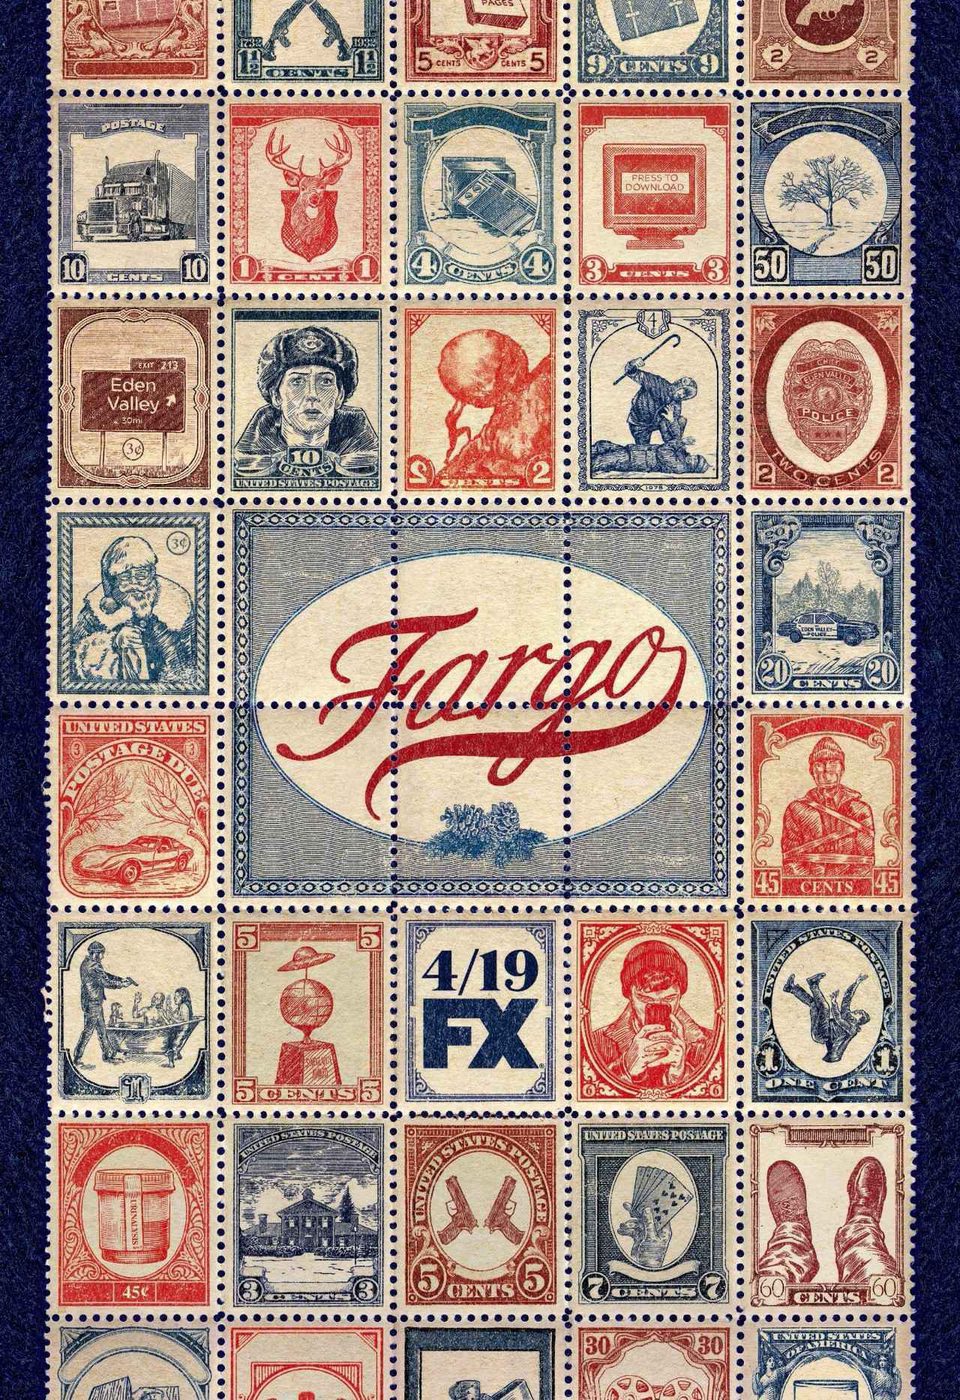 Cartel de Fargo - Temporada 3